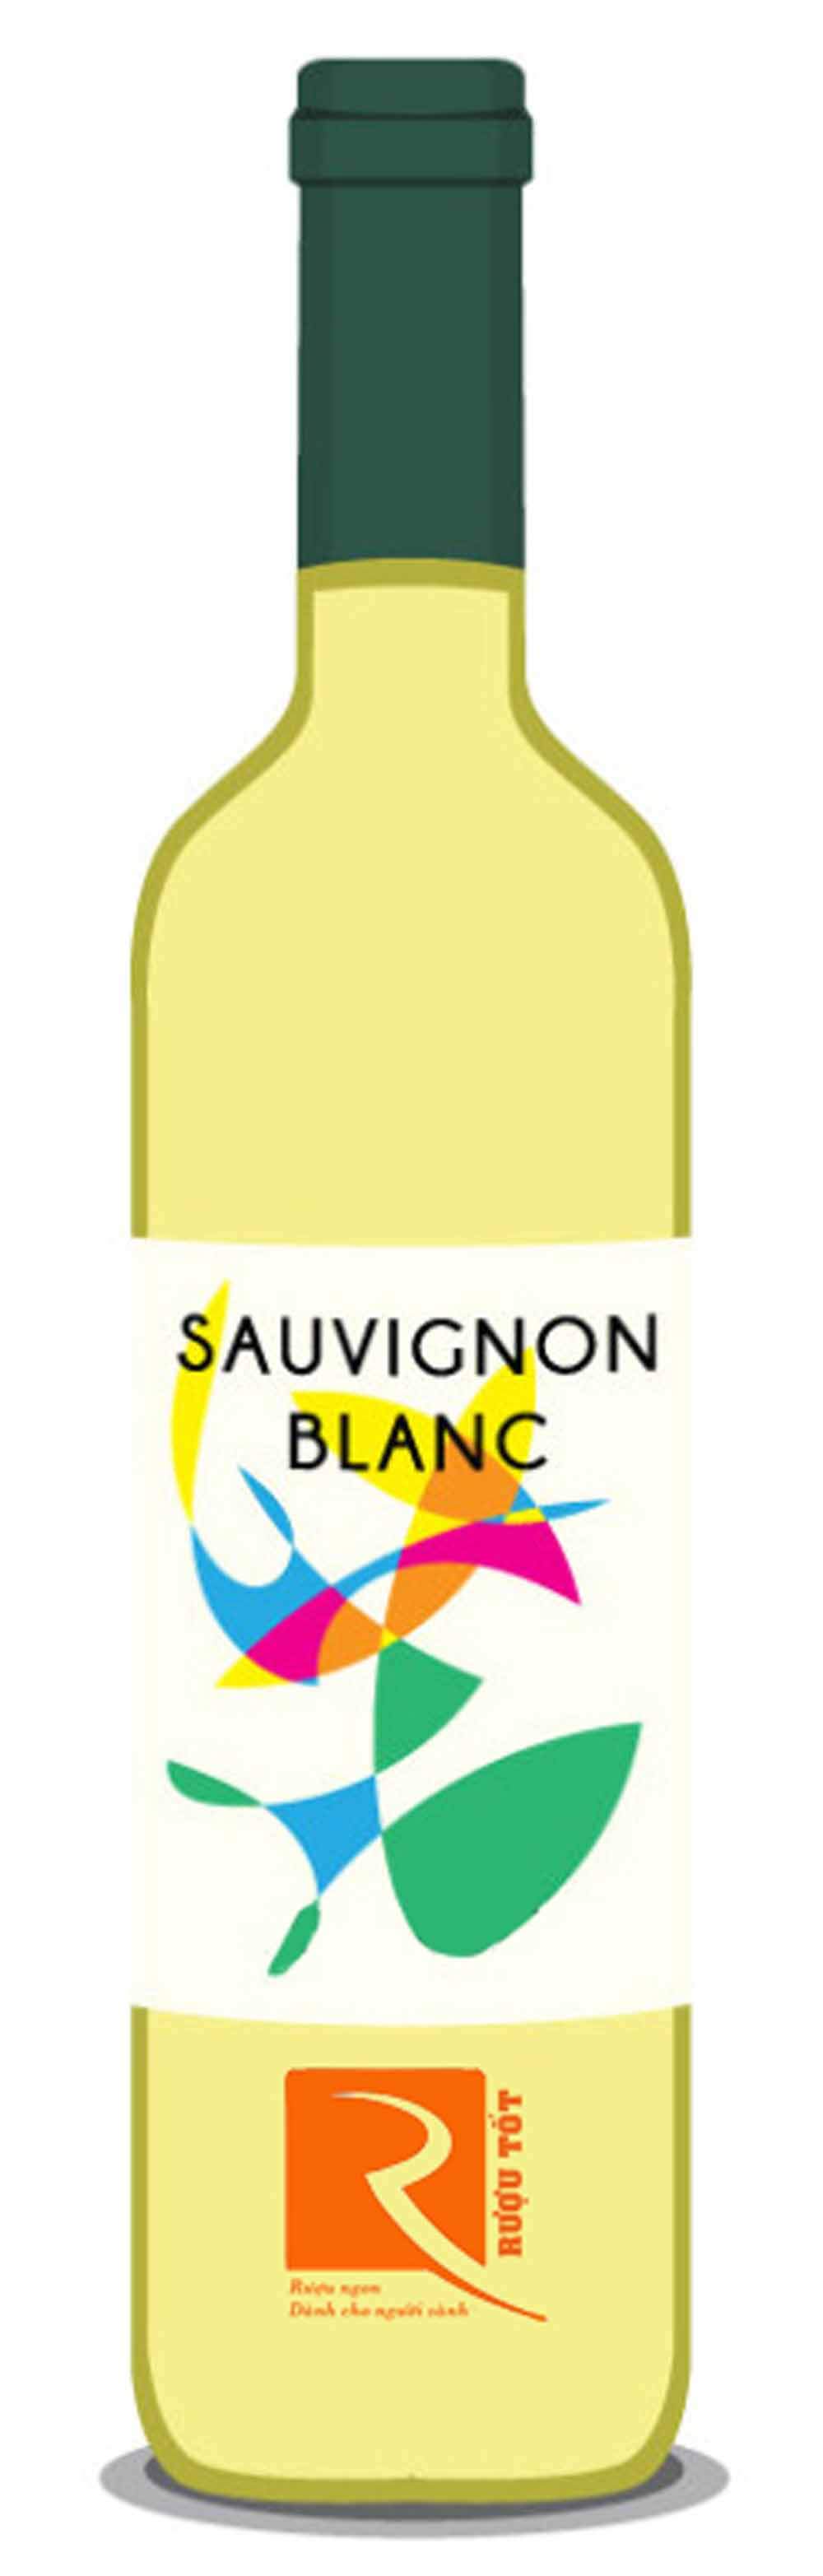 Ghép thực phẩm với Sauvignon Blanc